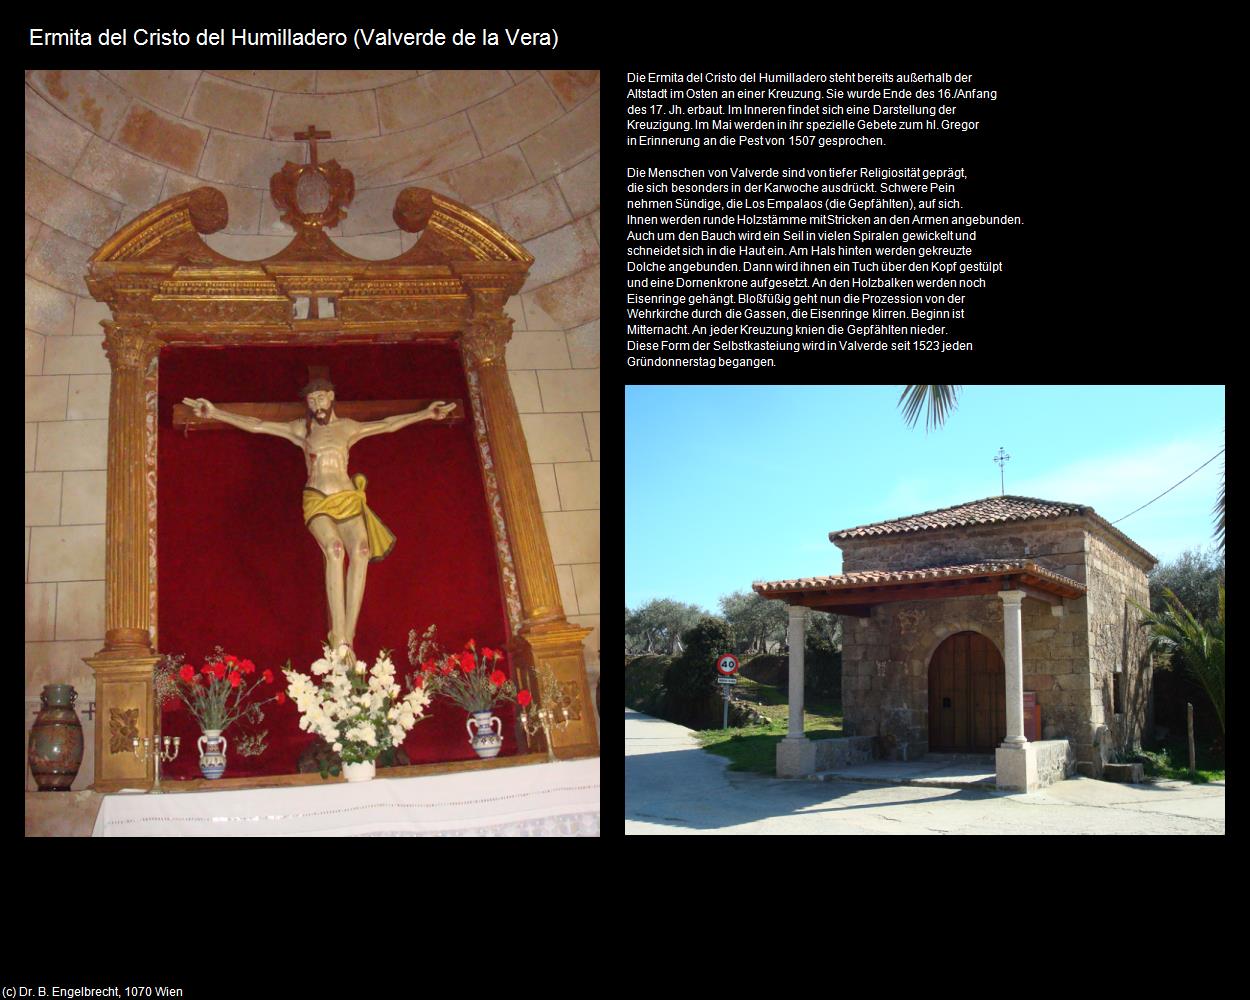 Ermita del cristo del Humilladero (Valverde de la Vera) in EXTREMADURA